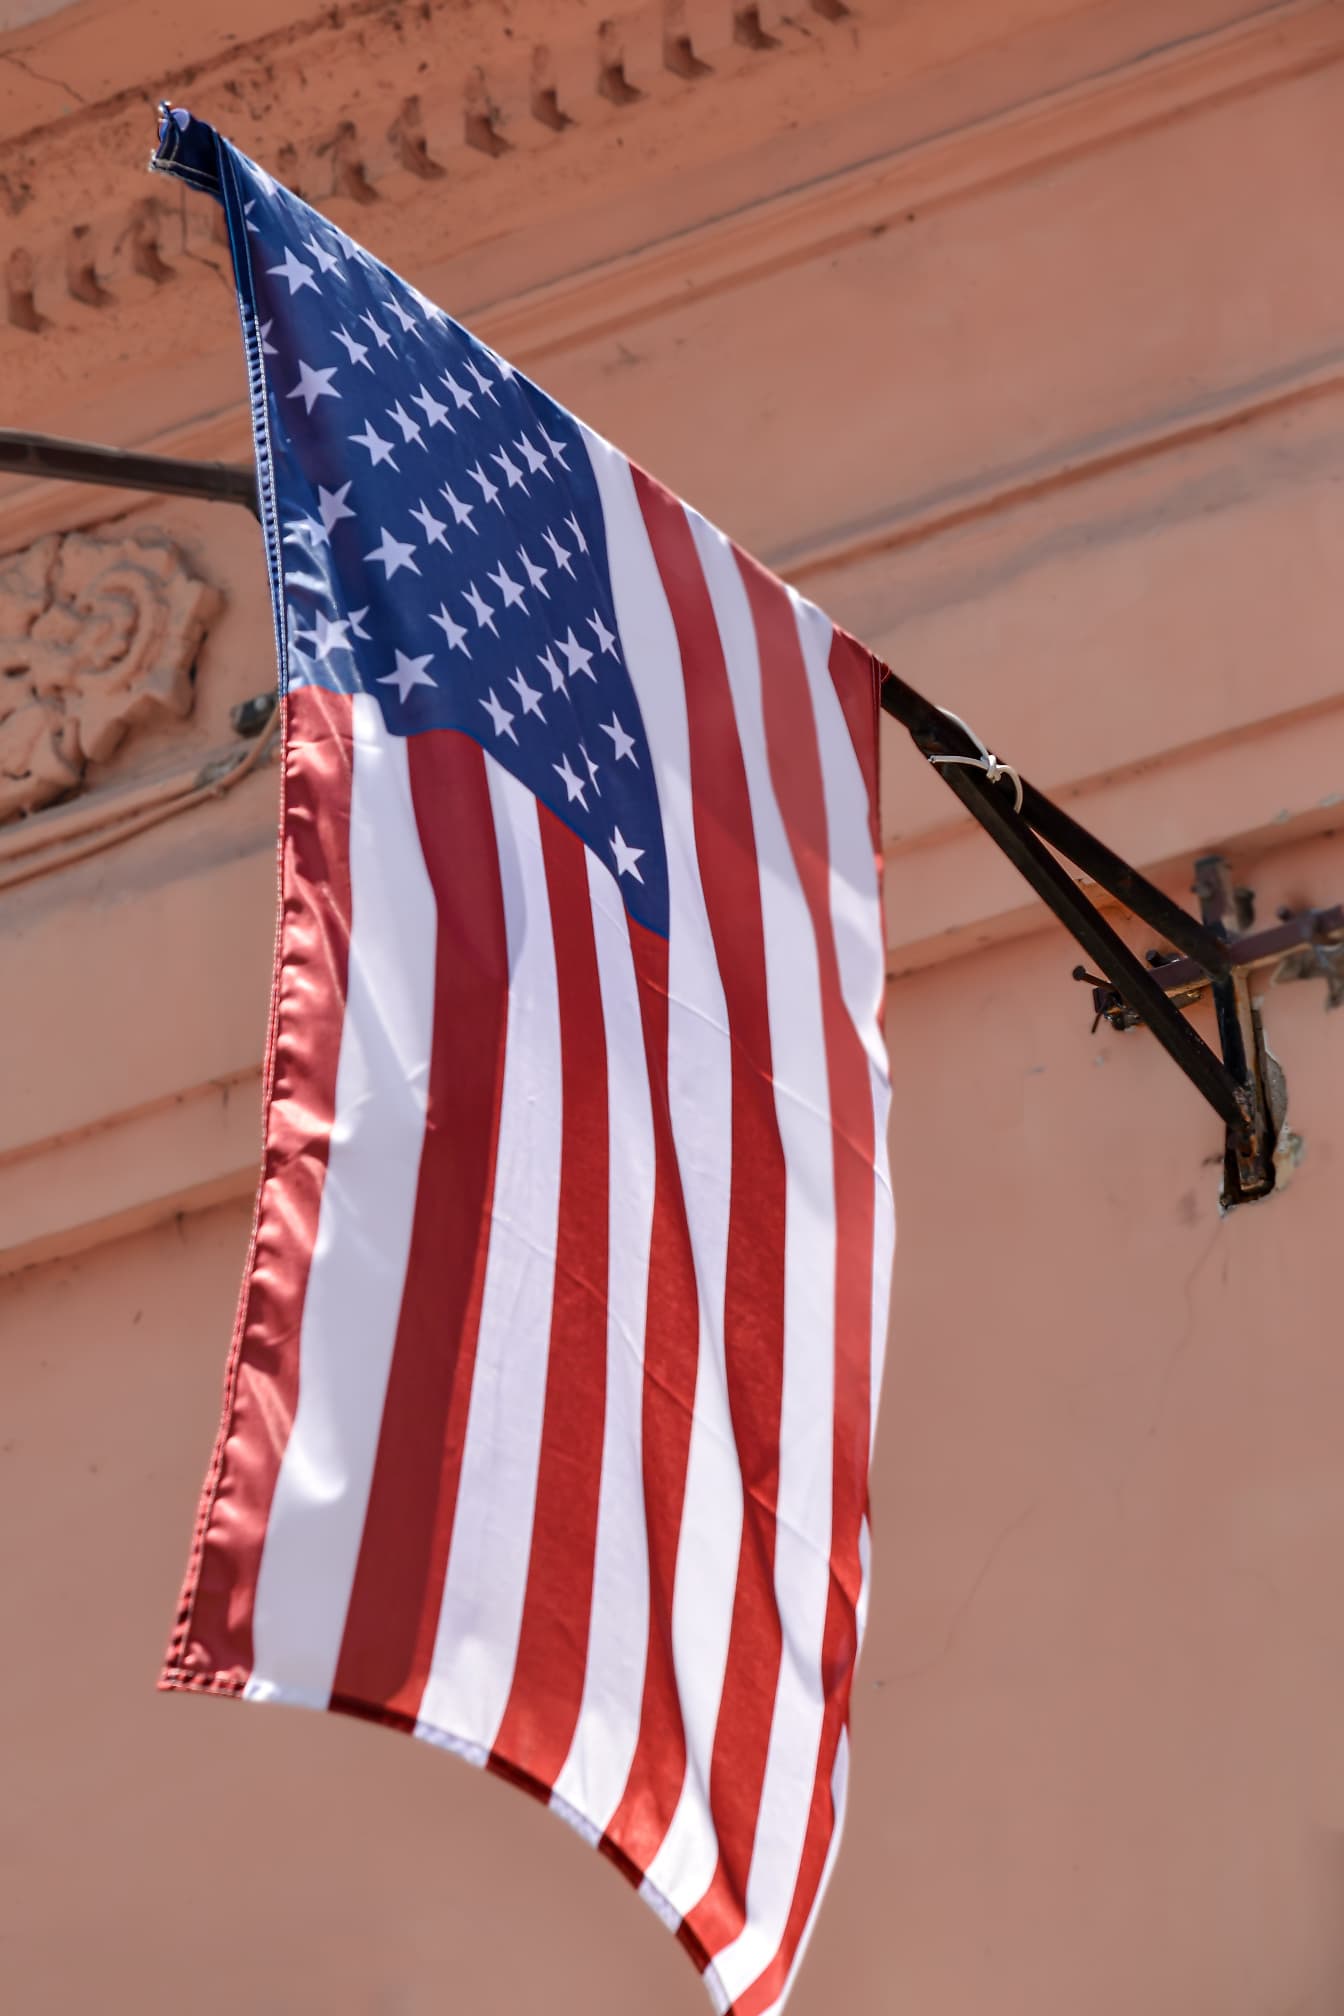 墙上旗杆上的美利坚合众国国旗(USA)